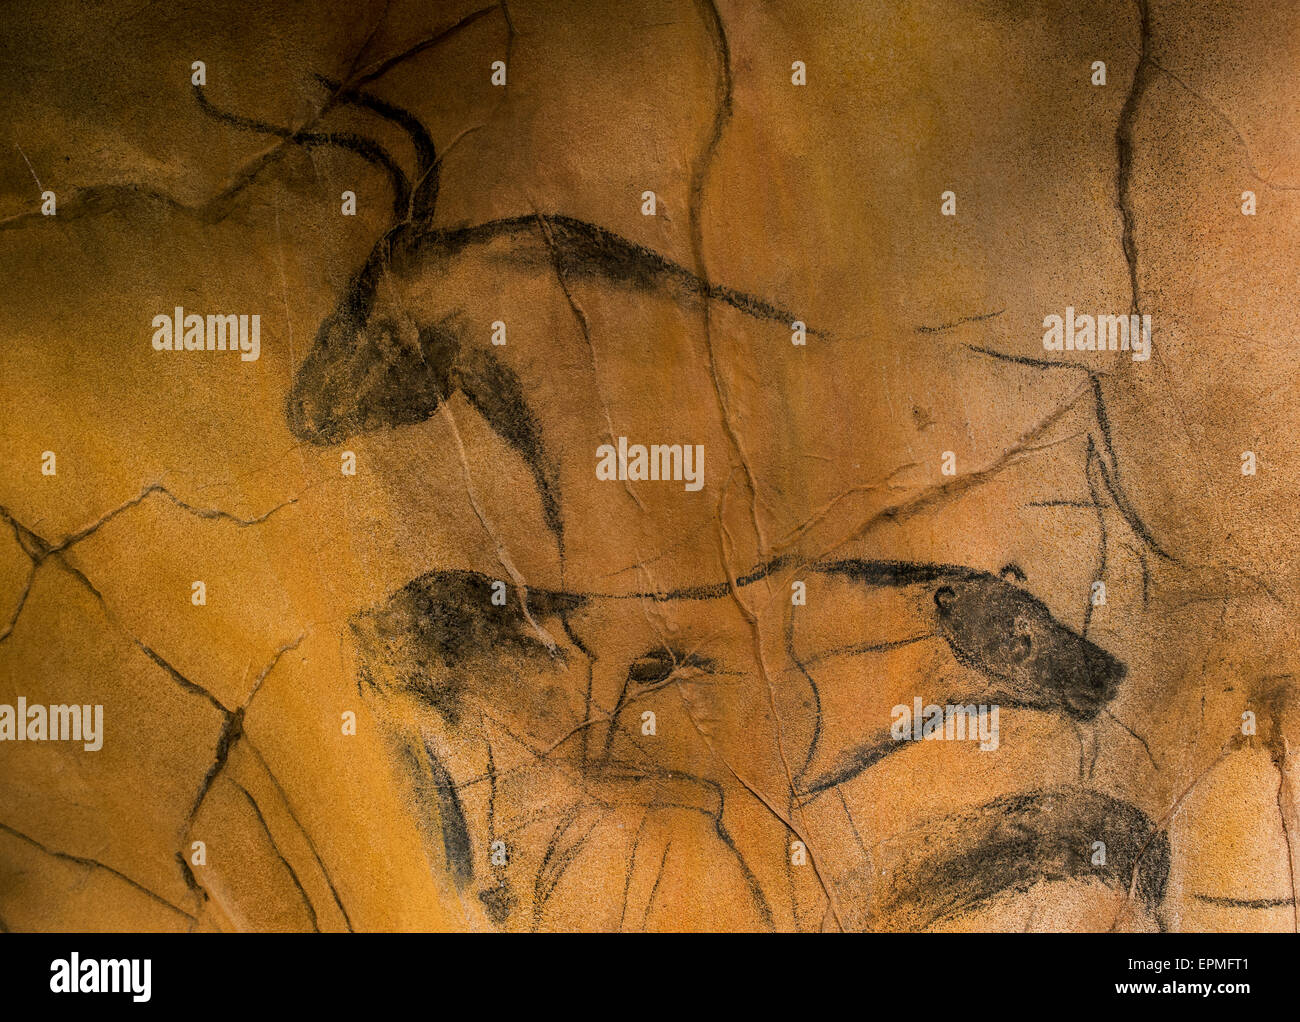 Réplique de peintures rupestres préhistoriques de la grotte Chauvet, Ardèche, France, montrant animaux éteints lion des cavernes et aurochs bull Banque D'Images